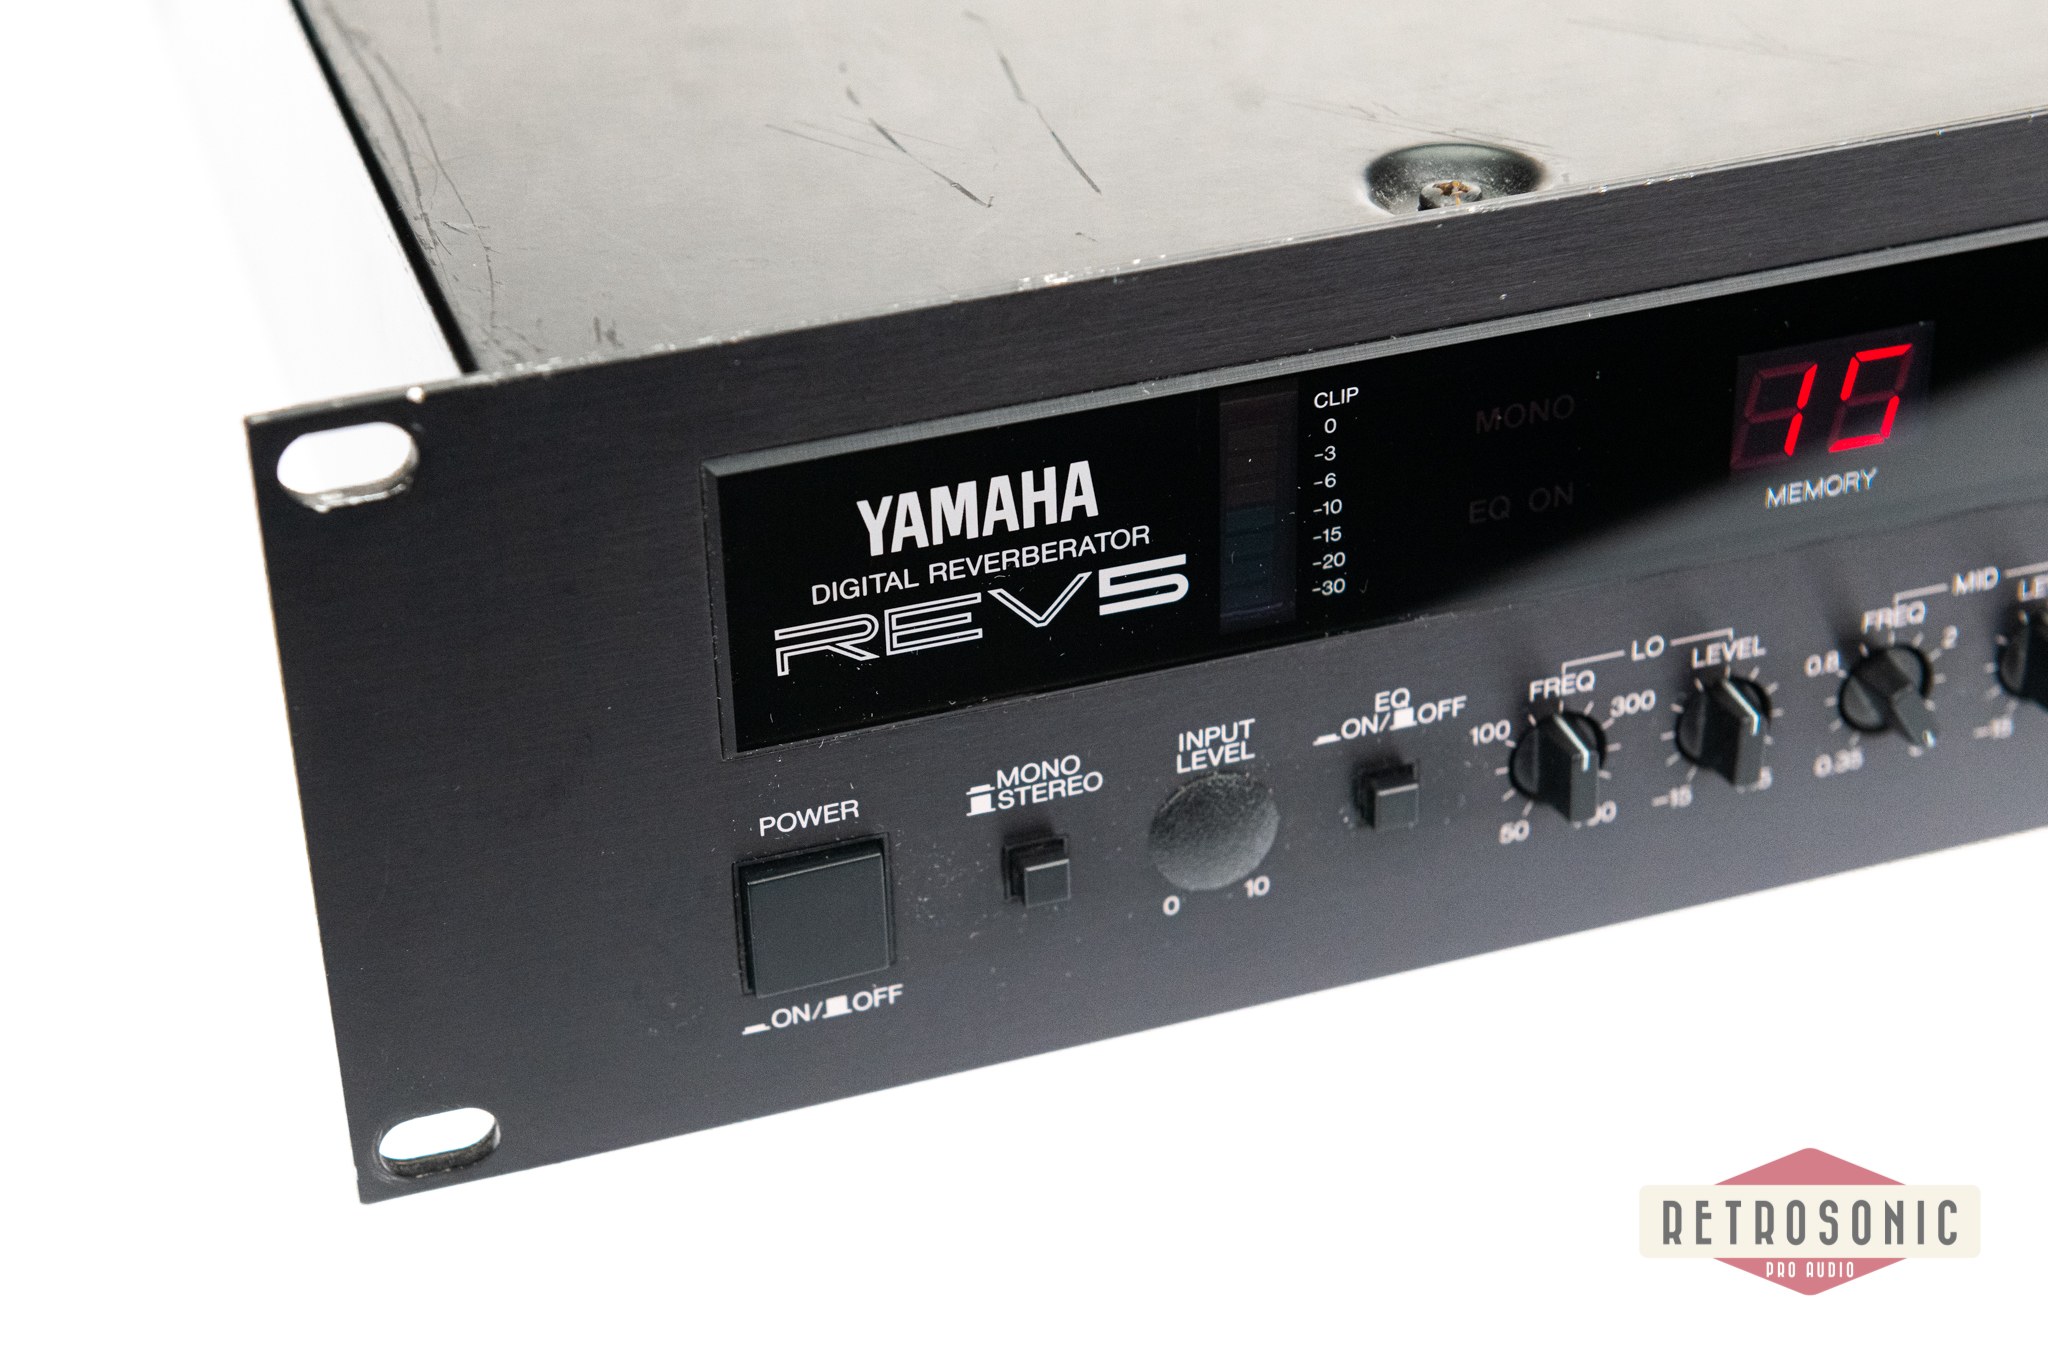 Yamaha REV-5 Digital Reverberator